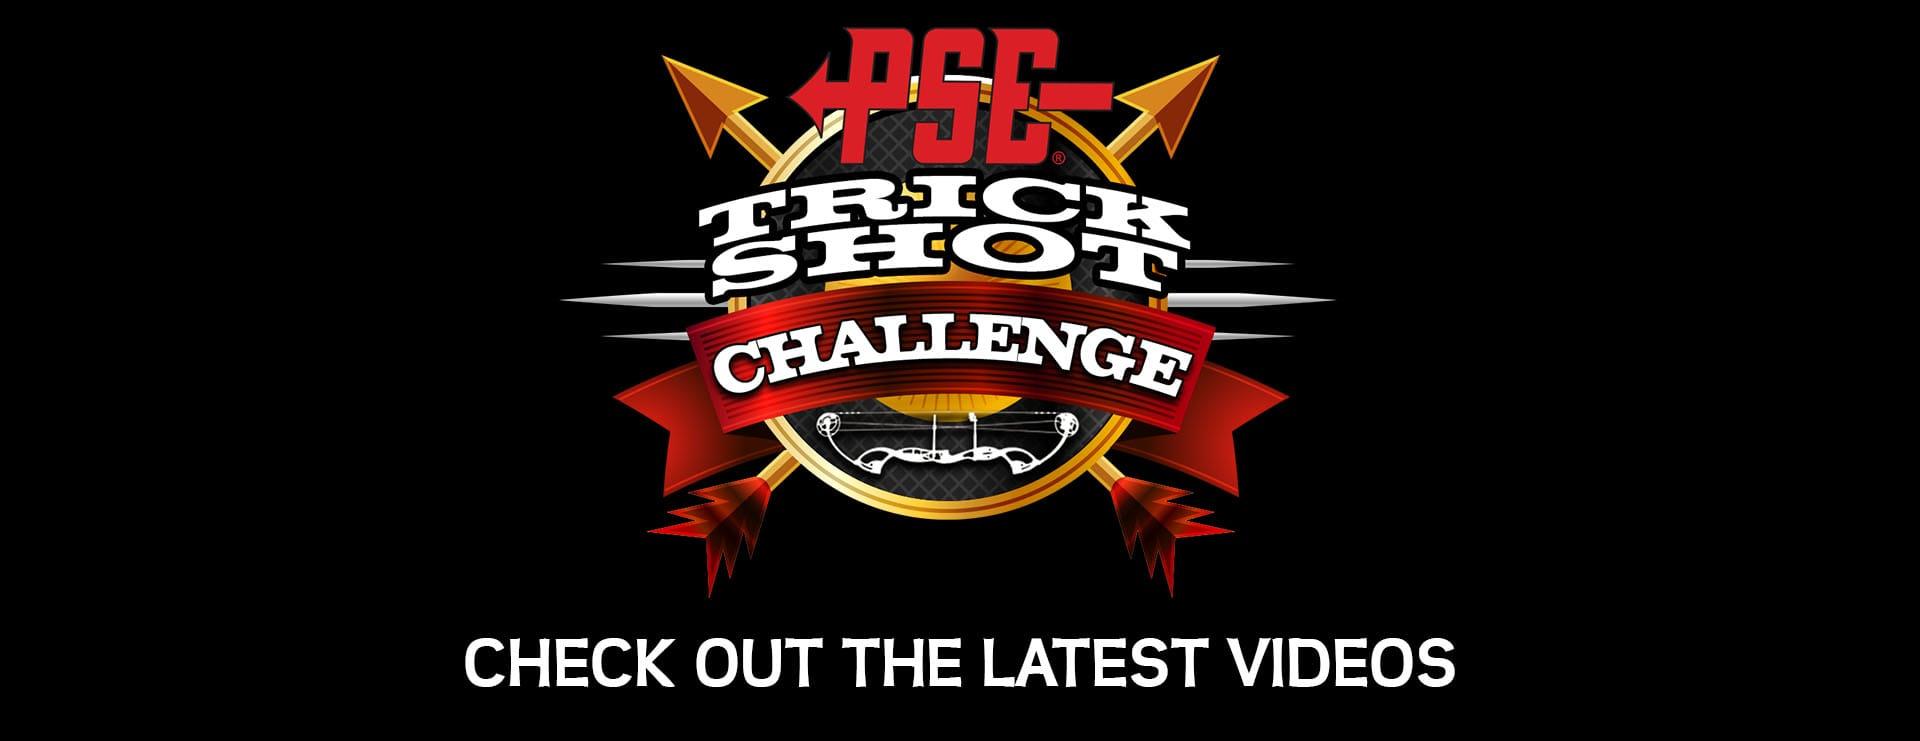 Trickshot Logo - PSE Trick Shot Challenge 2016 | PSE Archery